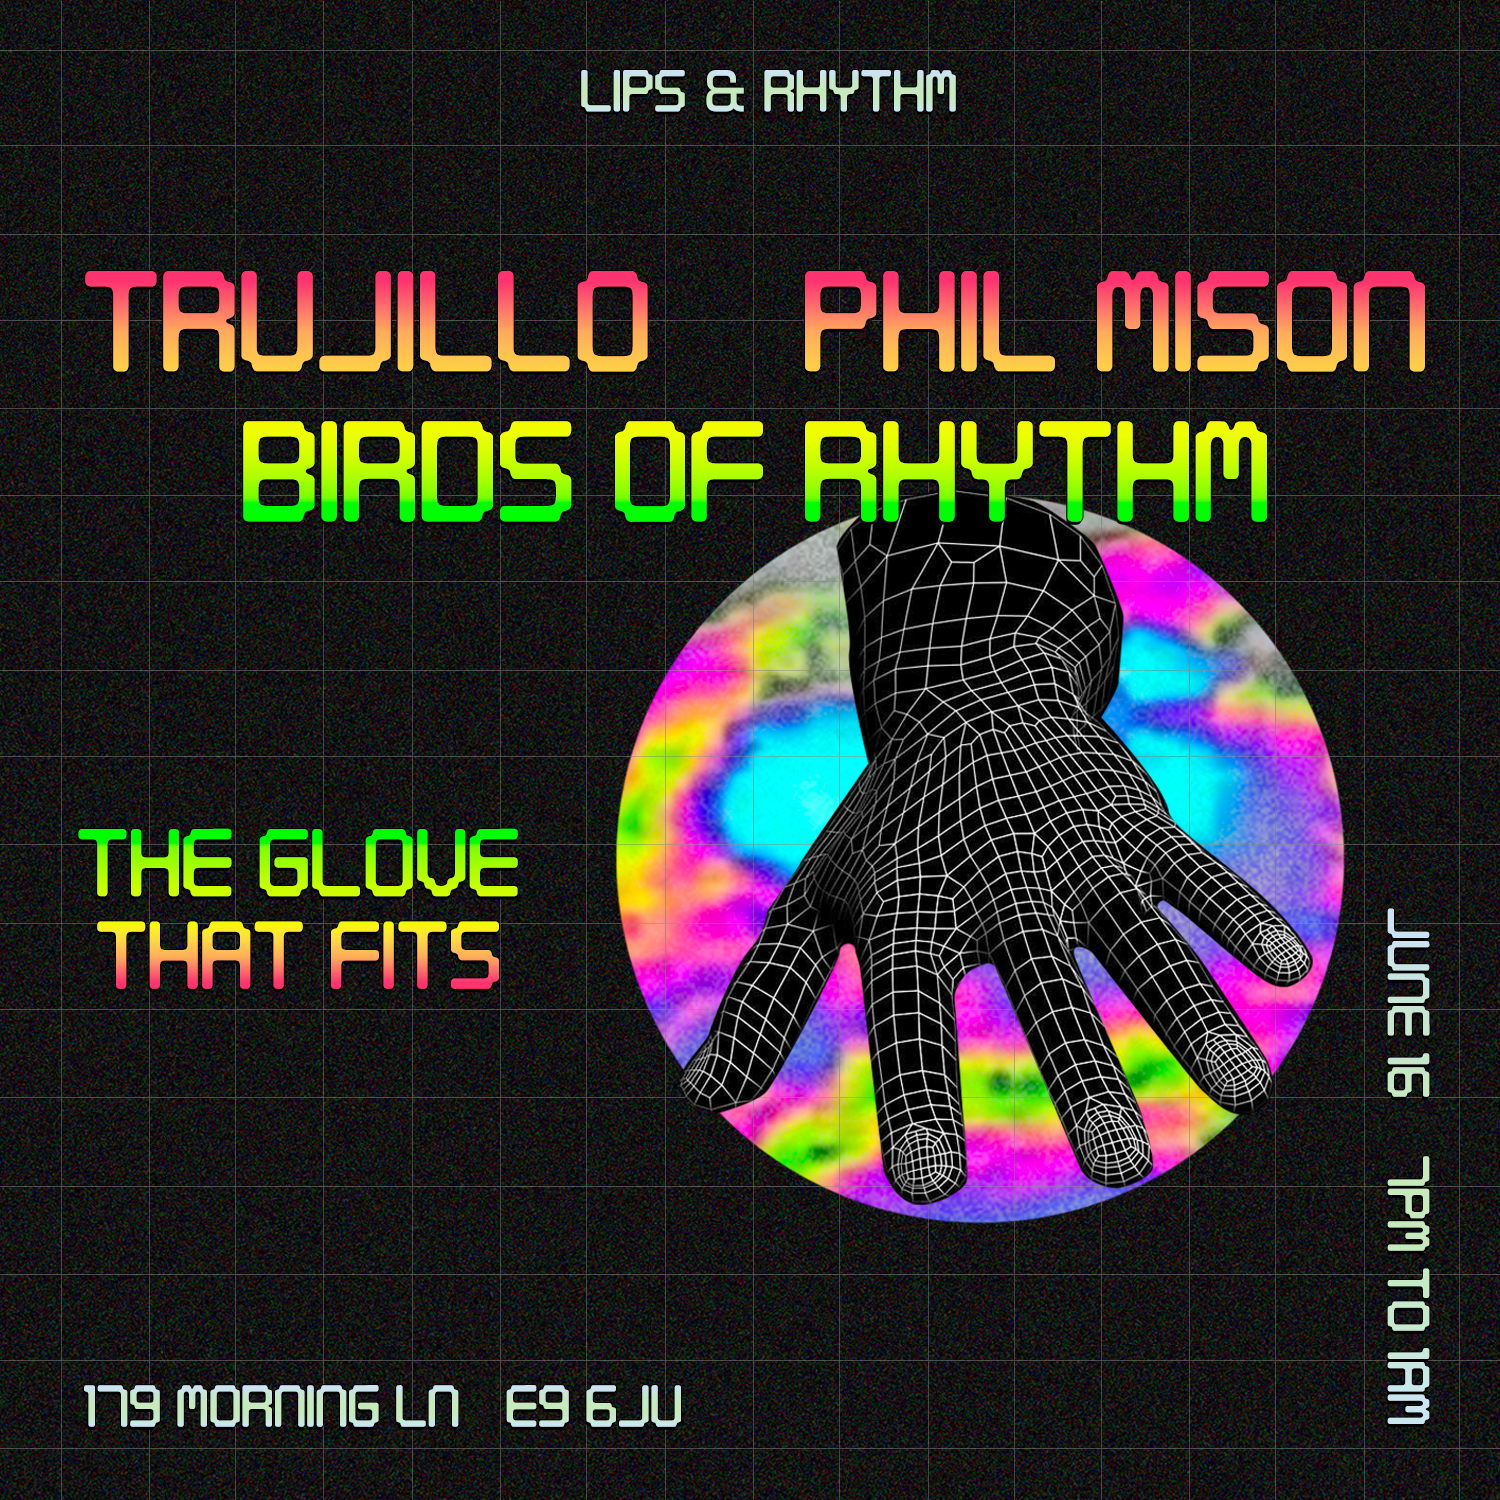 [CANCELLED] Lips & Rhythm with: Phil Mison, Trujillo & Birds Of Rhythm - フライヤー表